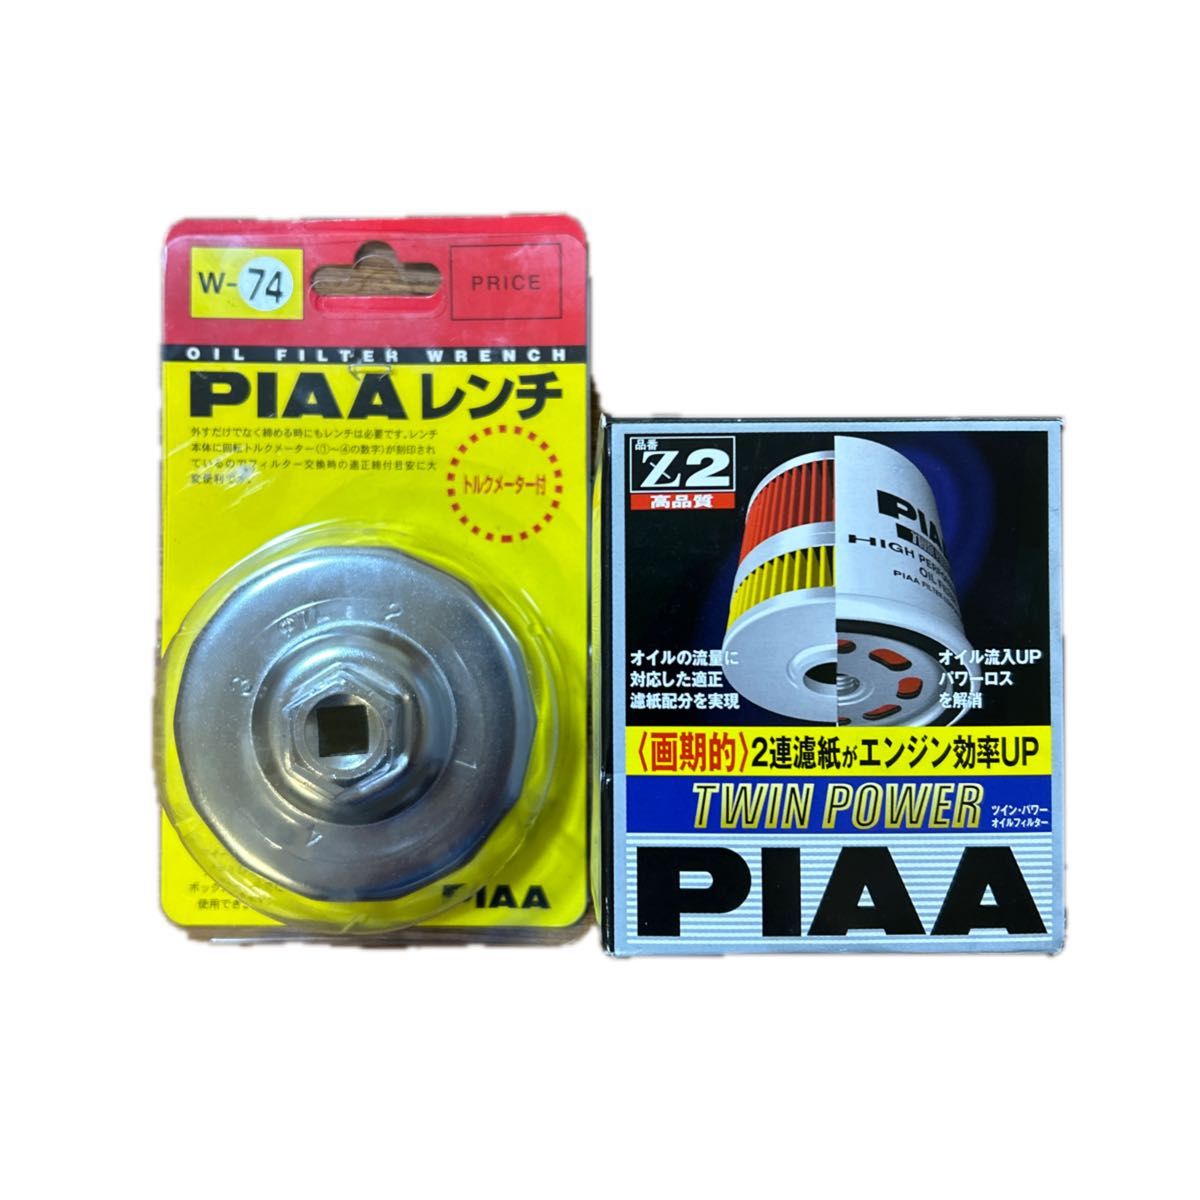 未使用品PIAA オイルフィルター ツインパワー 1個入 [トヨタ車用] Z2 + オイルフィルター用 カップ型レンチ 1個入 